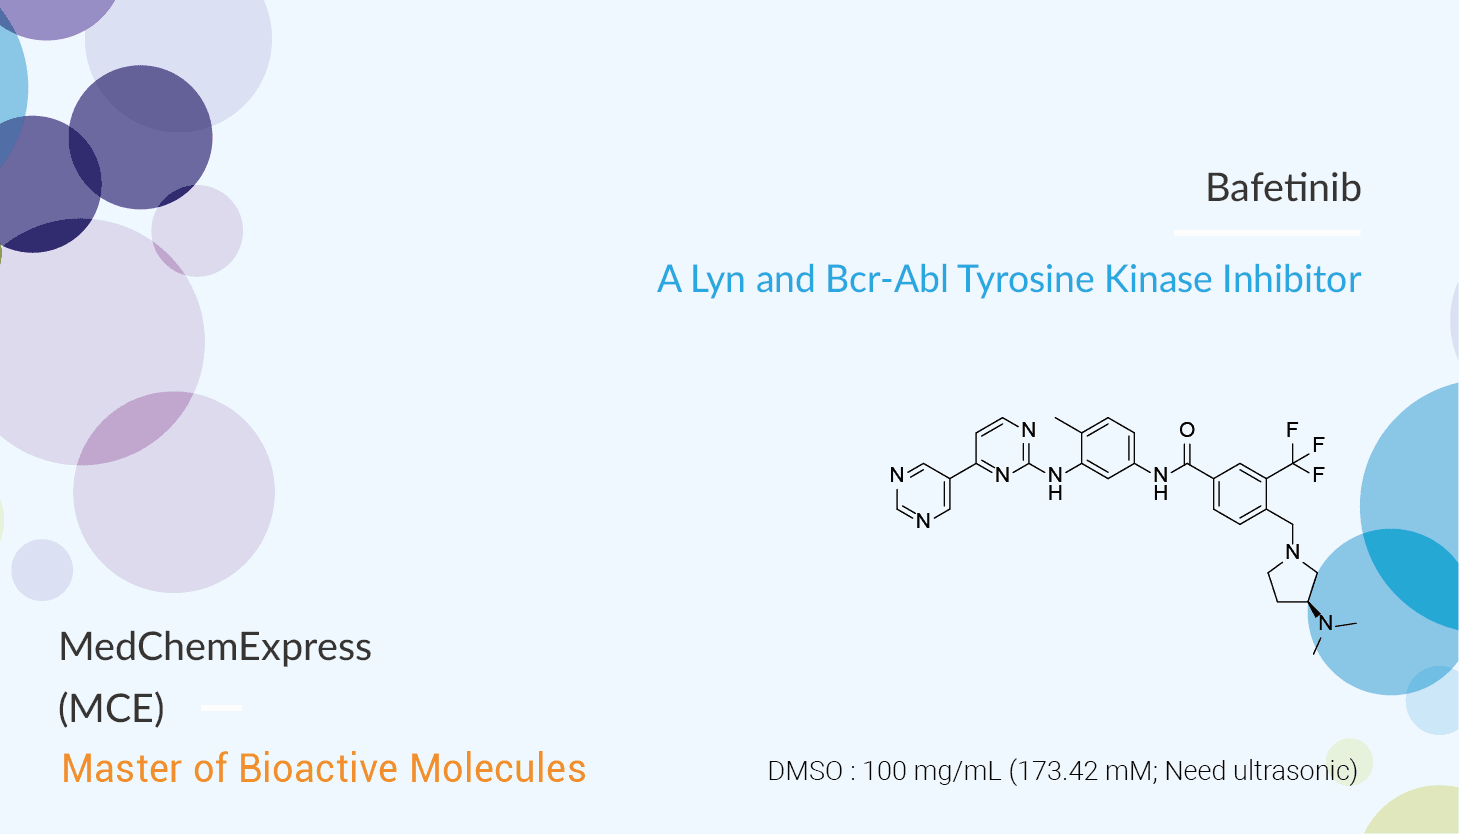 Bafetinib is a Lyn and Bcr-Abl Tyrosine Kinase Inhibitor